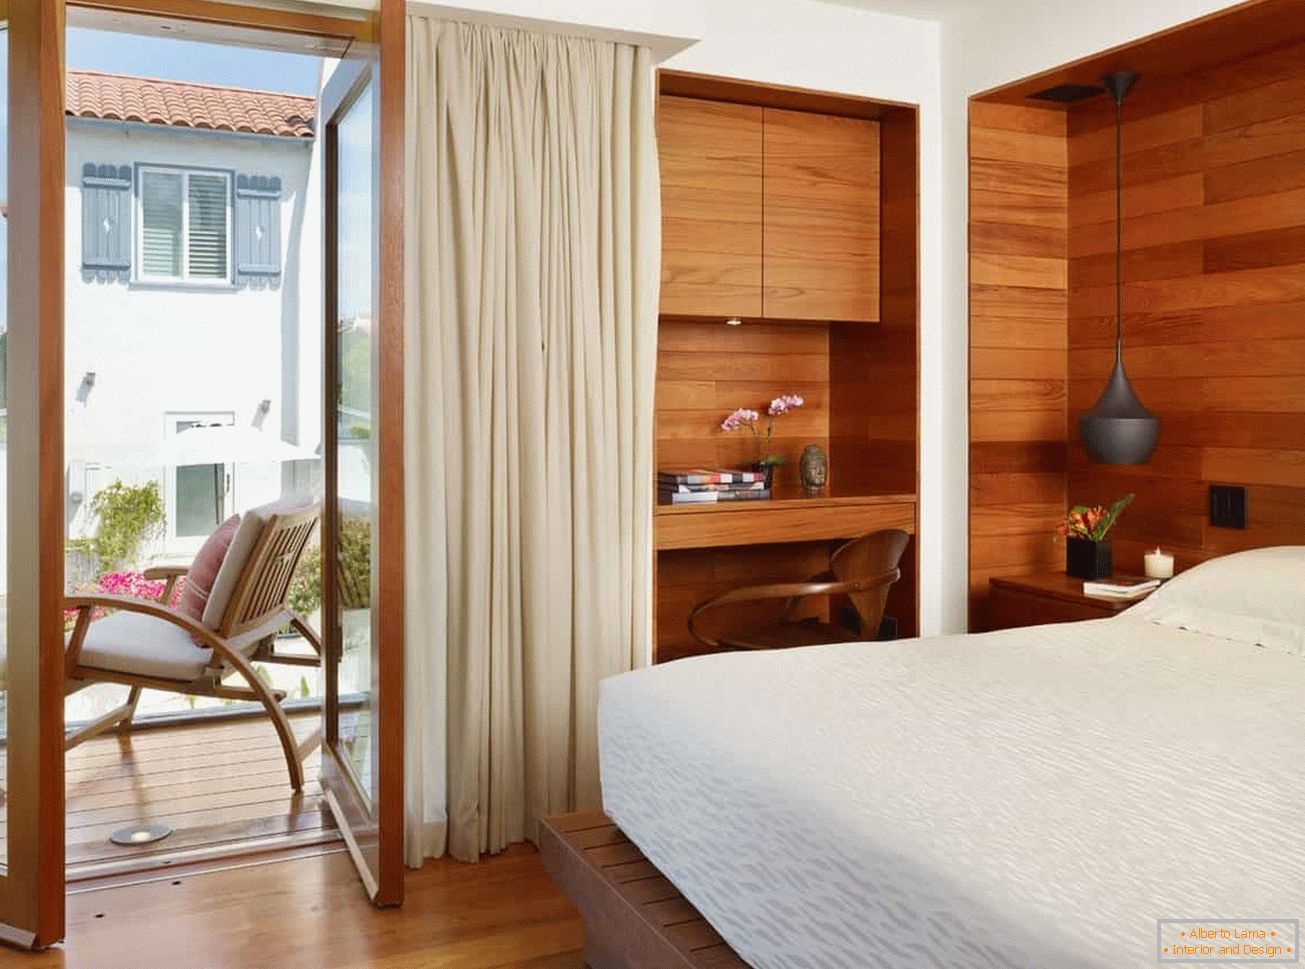 Mała sypialnia z drewnianym wykończeniem ścian